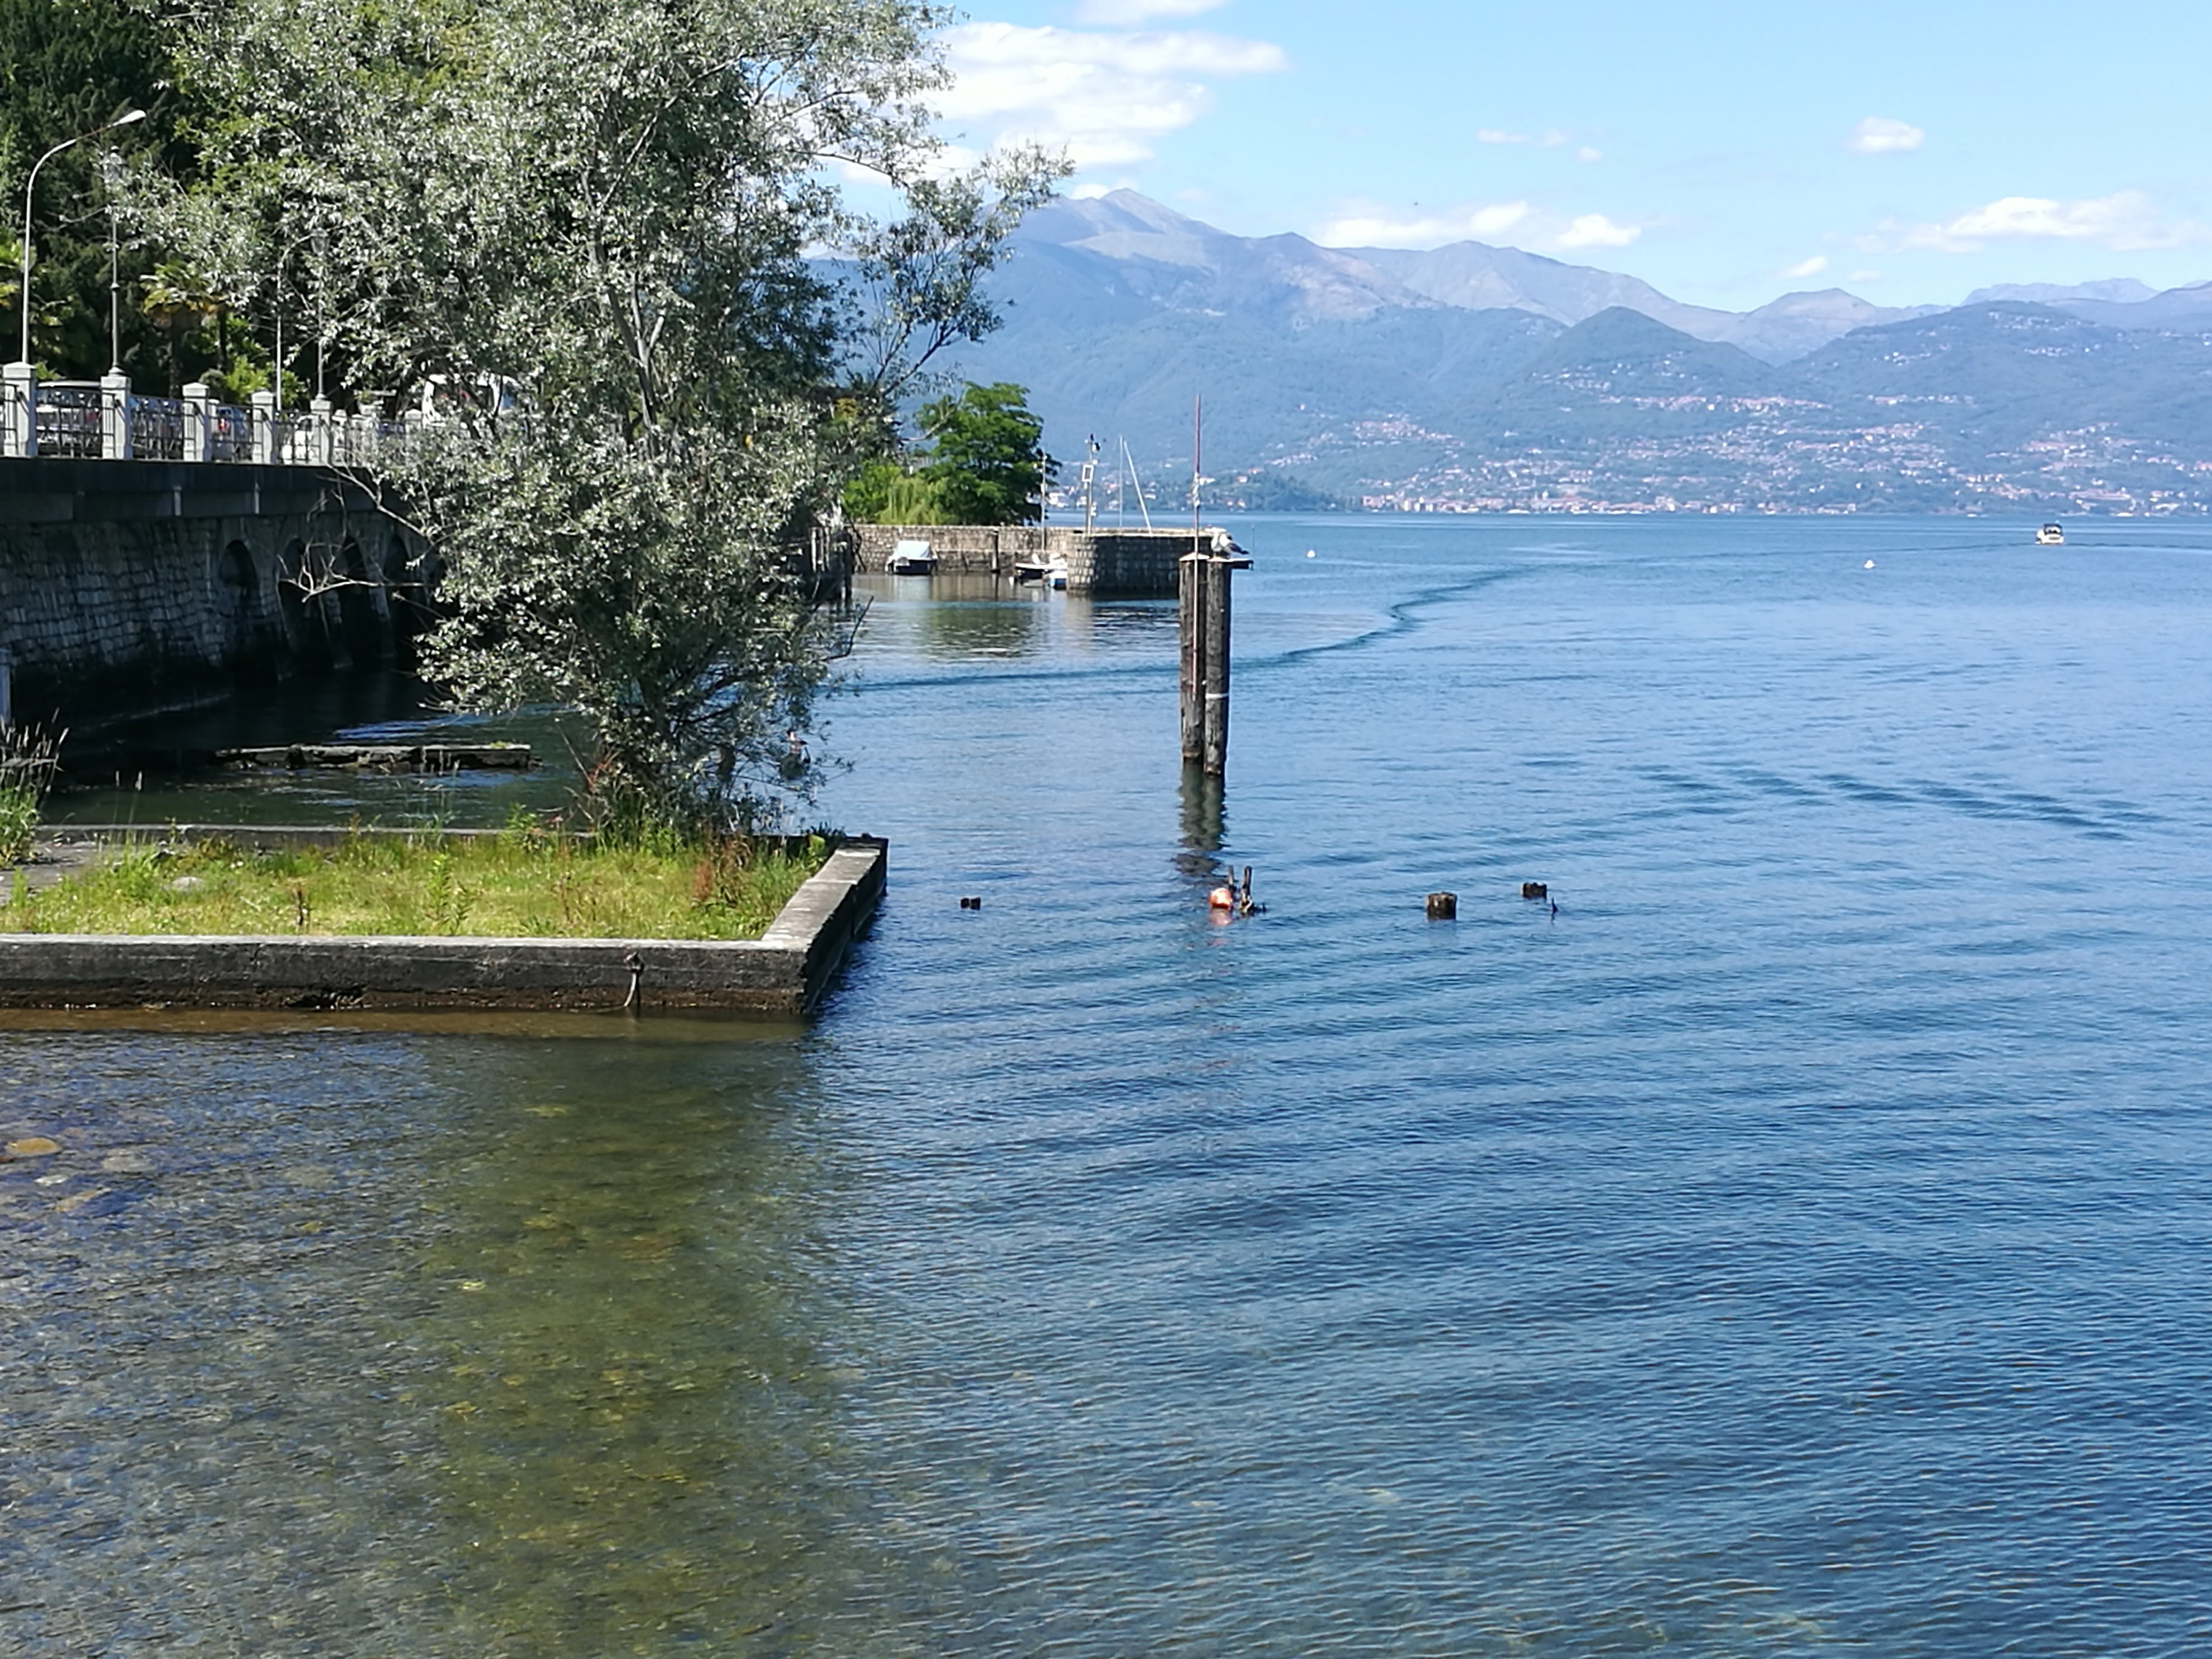 The shores of Lake Maggiore